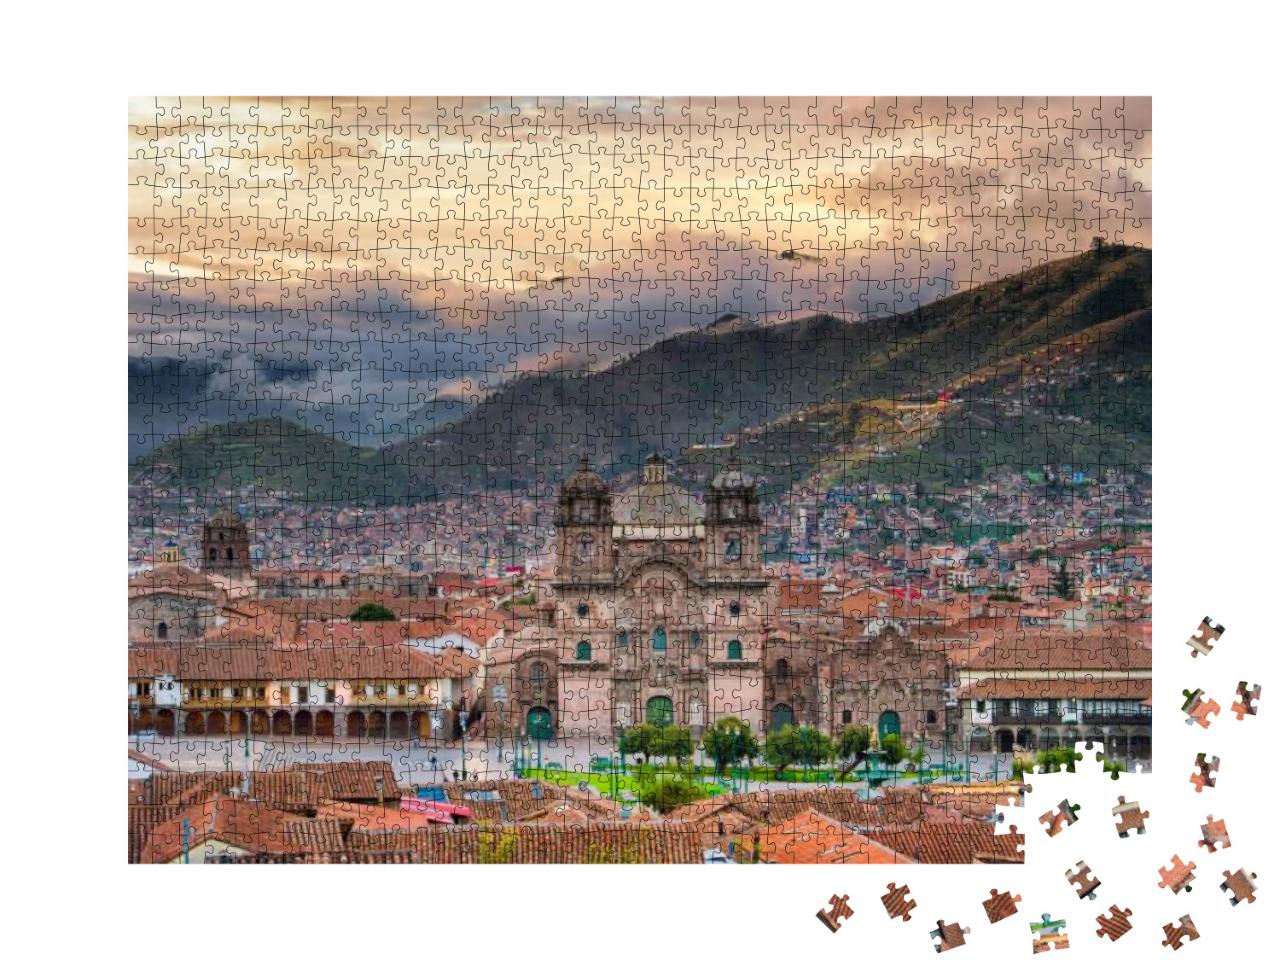 Puzzle 1000 Teile „Morgensonne auf der Plaza de armas, Cusco“